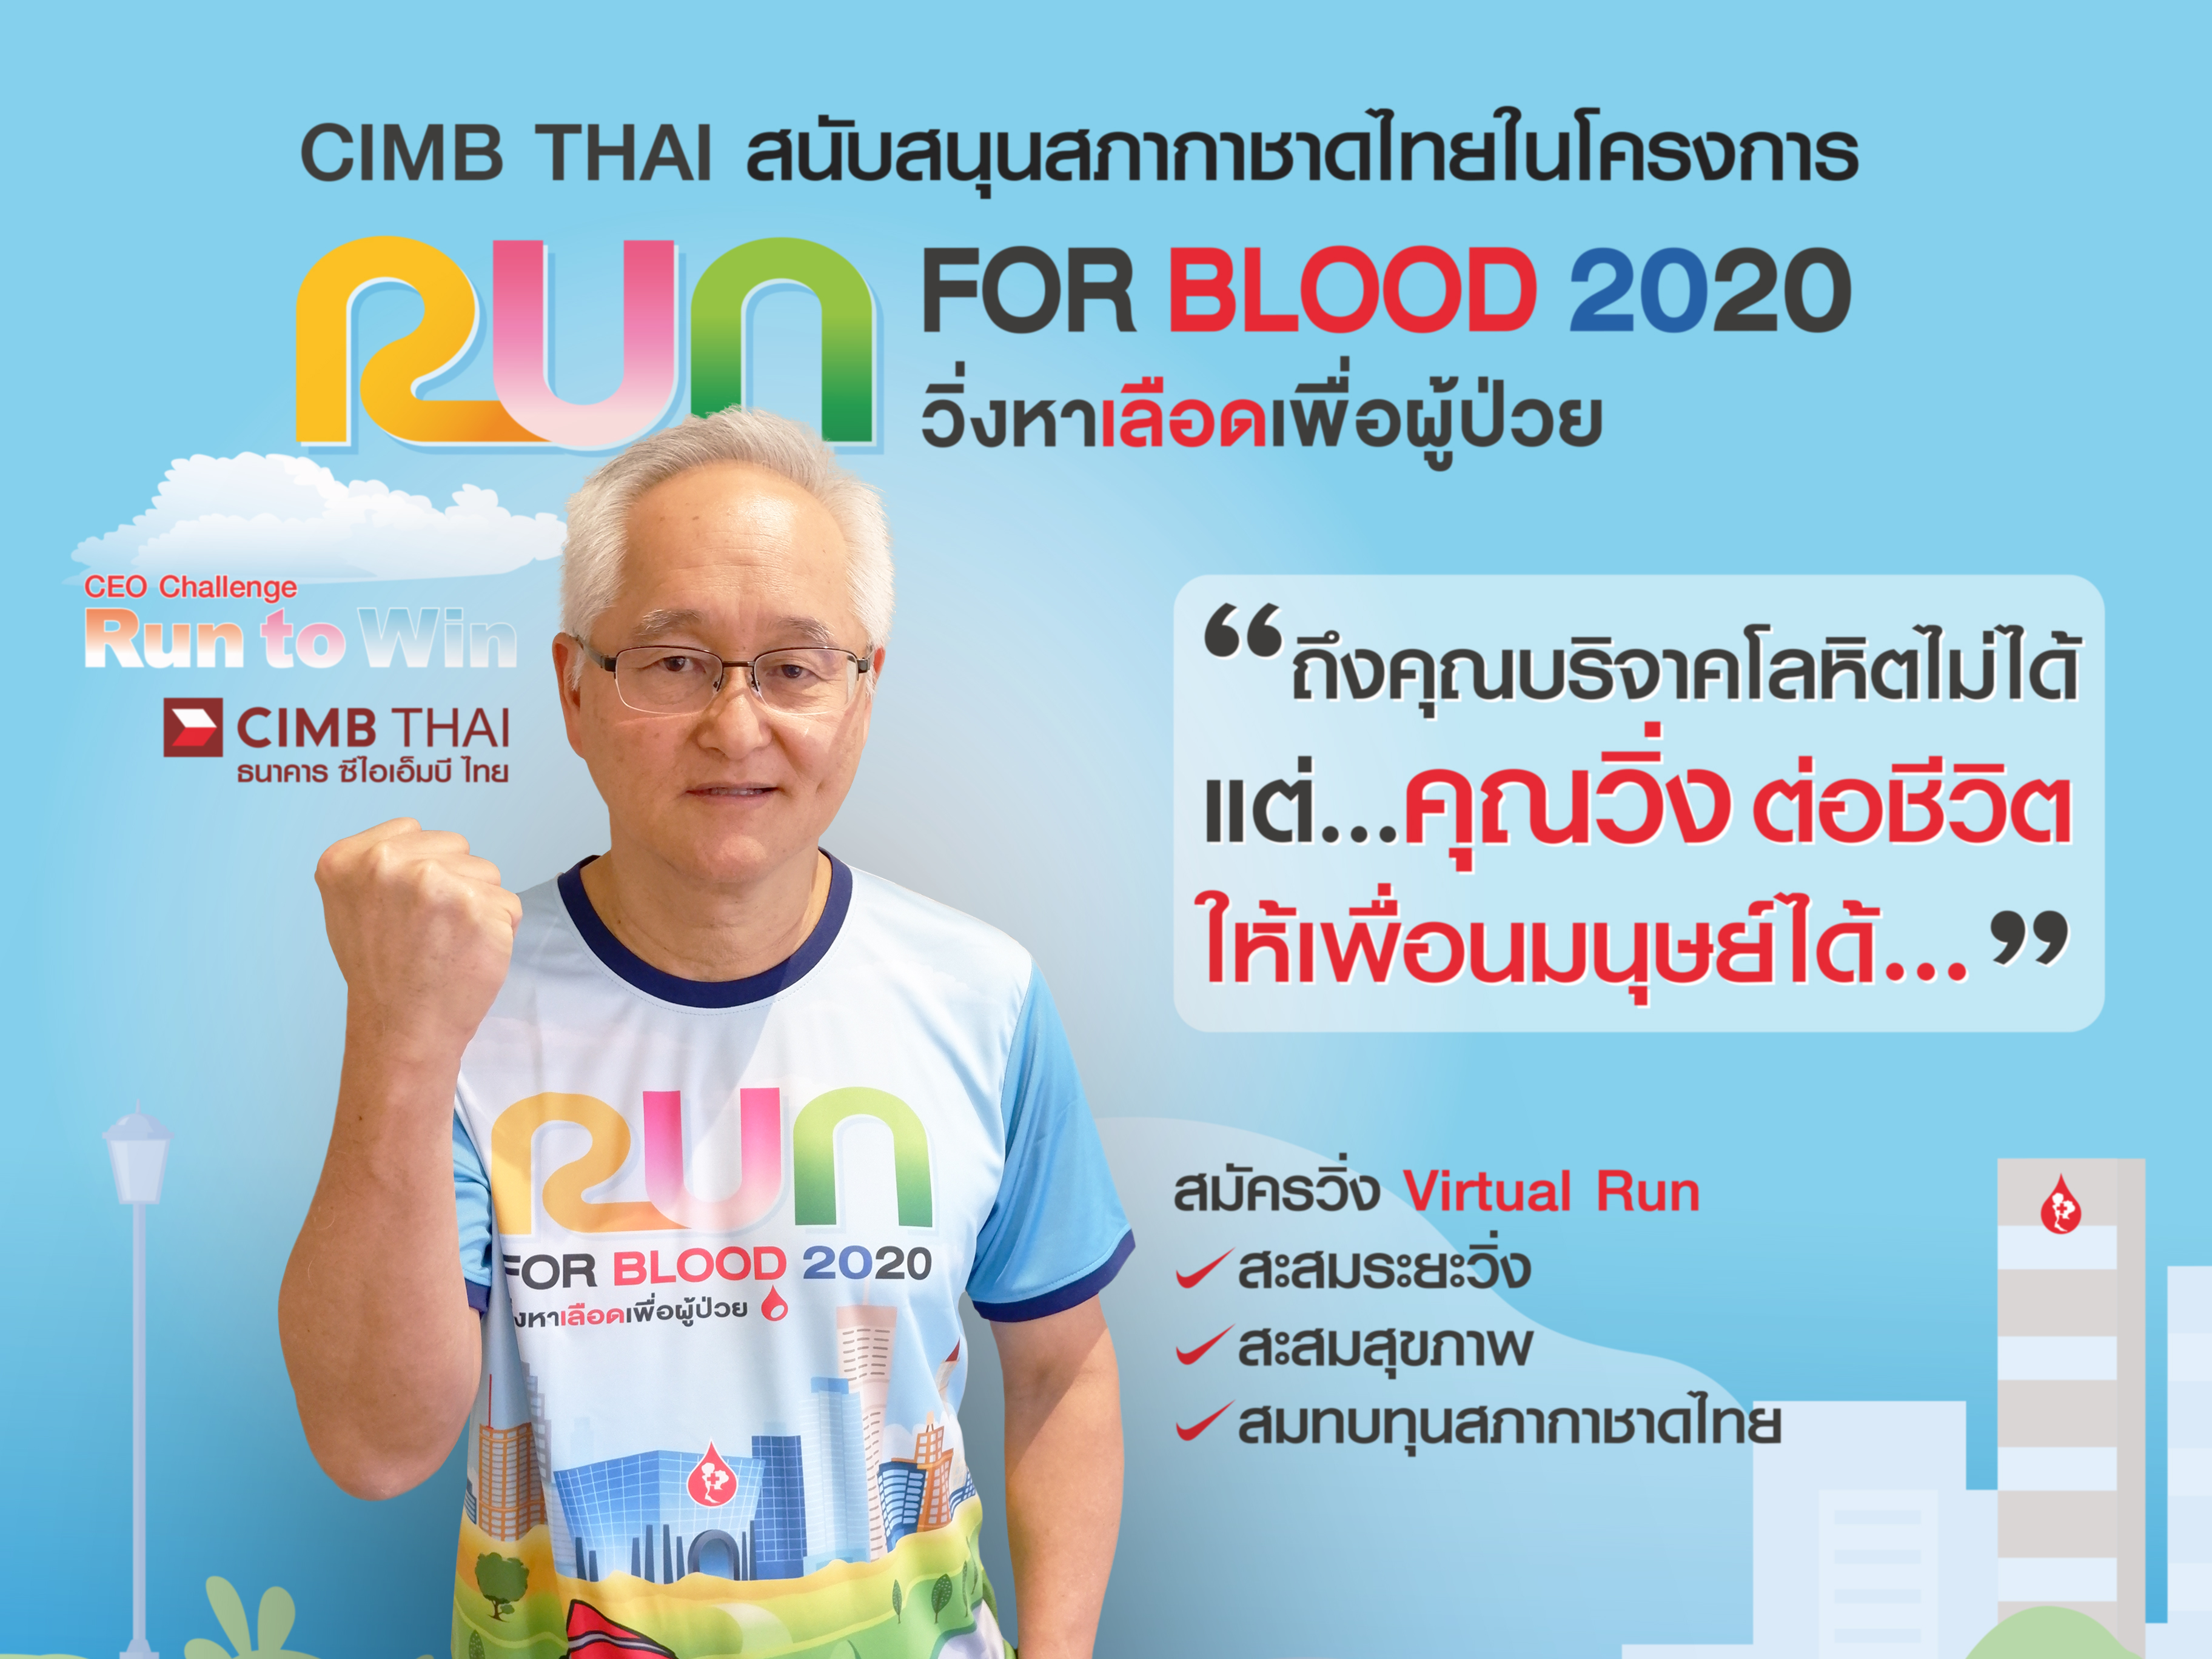 ธนาคาร ซีไอเอ็มบี ไทย ชวนคนแบงก์สมัครวิ่ง Virtual Run ในโครงการ 'RUN FOR BLOOD 2020 วิ่งหาเลือดเพื่อผู้ป่วย